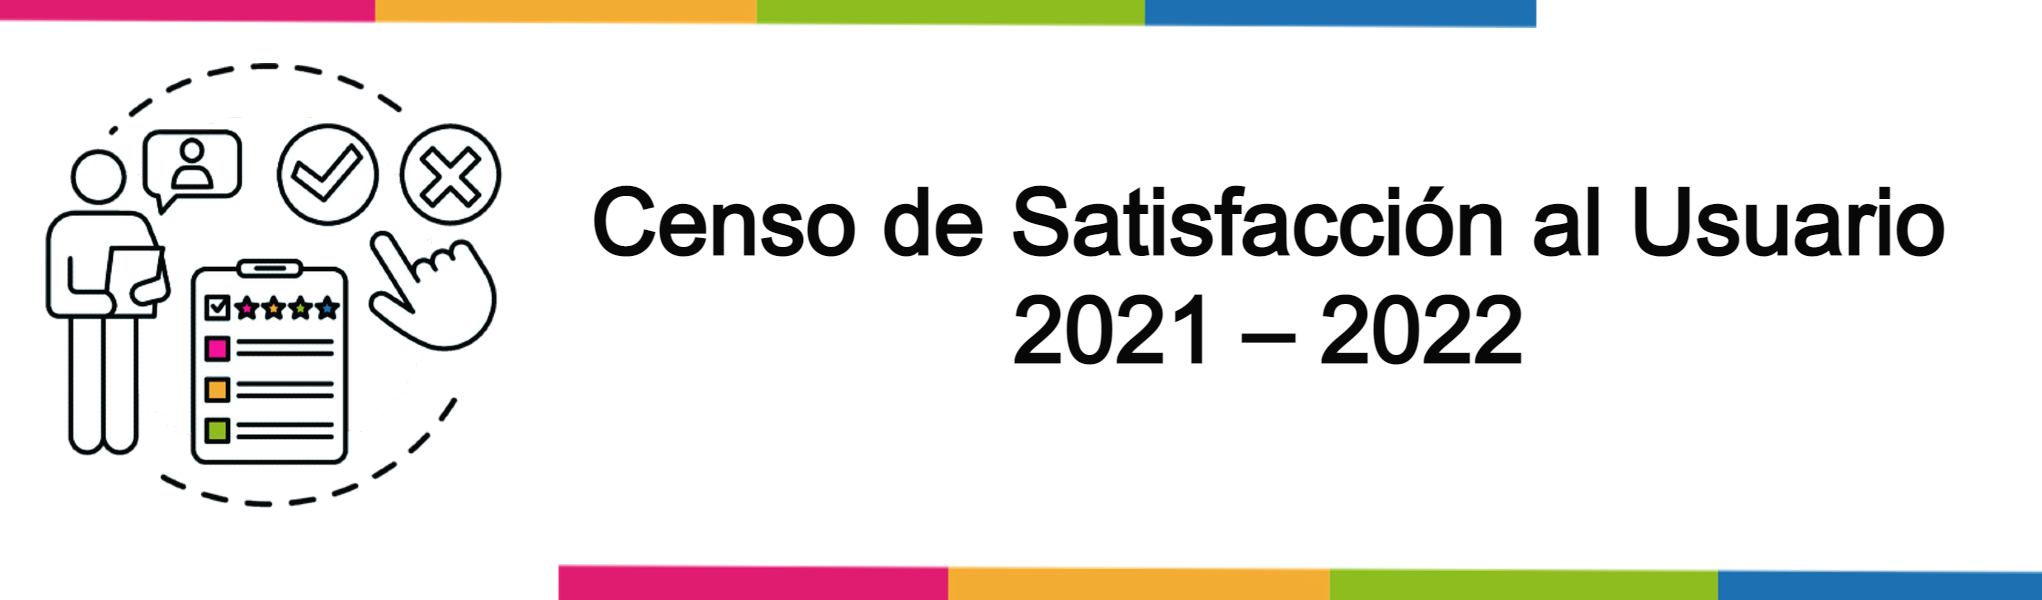 Censo de Satisfacción al Usuario del 5 de abril  al 5 mayo 2022